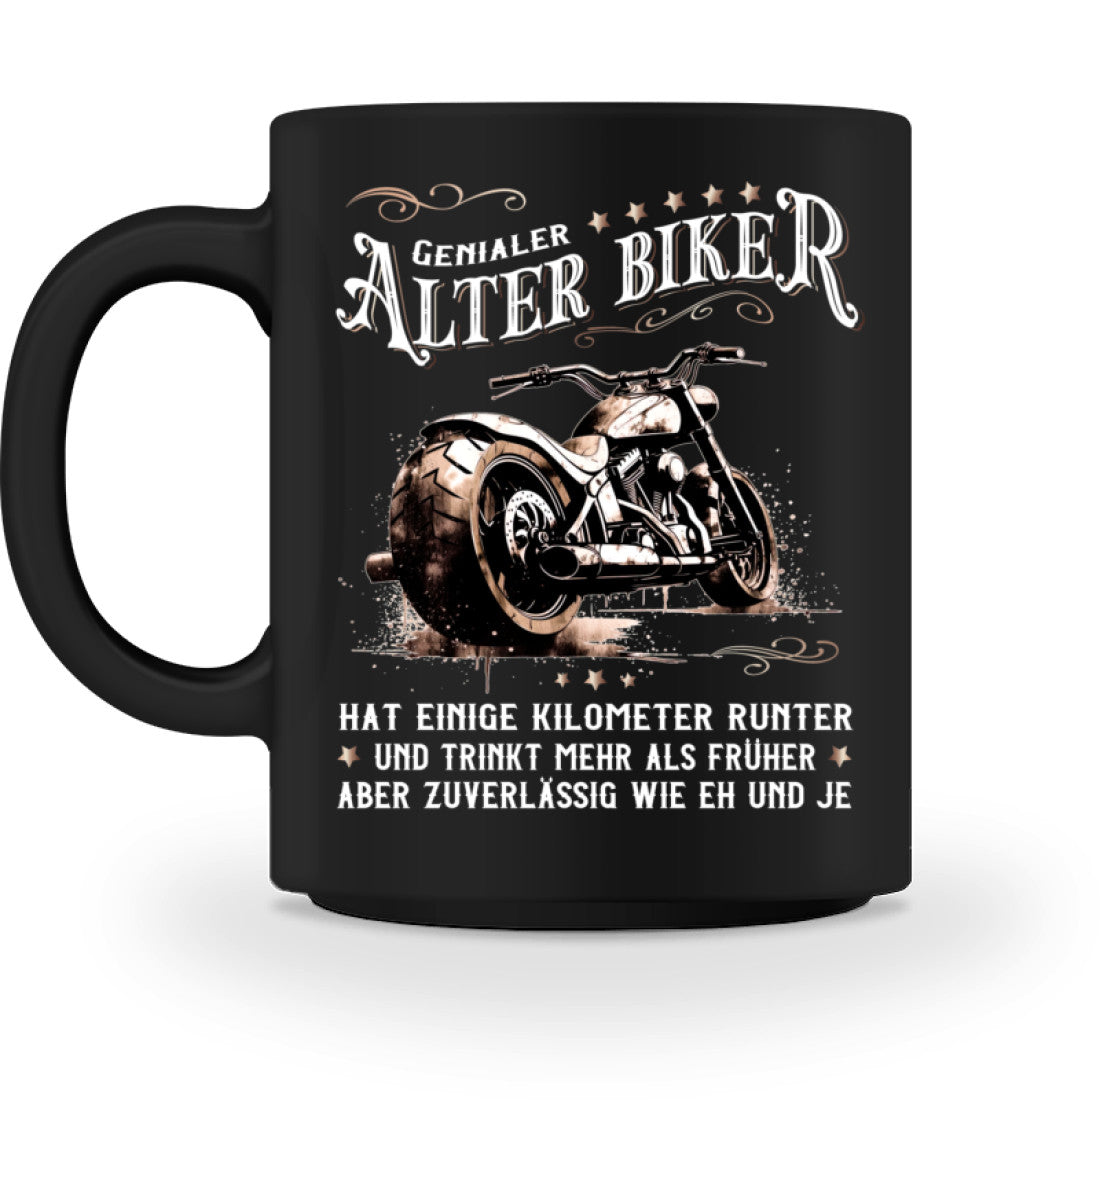 Eine Biker Tasse für Motorradfahrer, von Wingbikers, mit dem beidseitigen Aufdruck, Alter Biker - Einige Kilometer runter, trinkt mehr - aber zuverlässig wie eh und je, in schwarz.